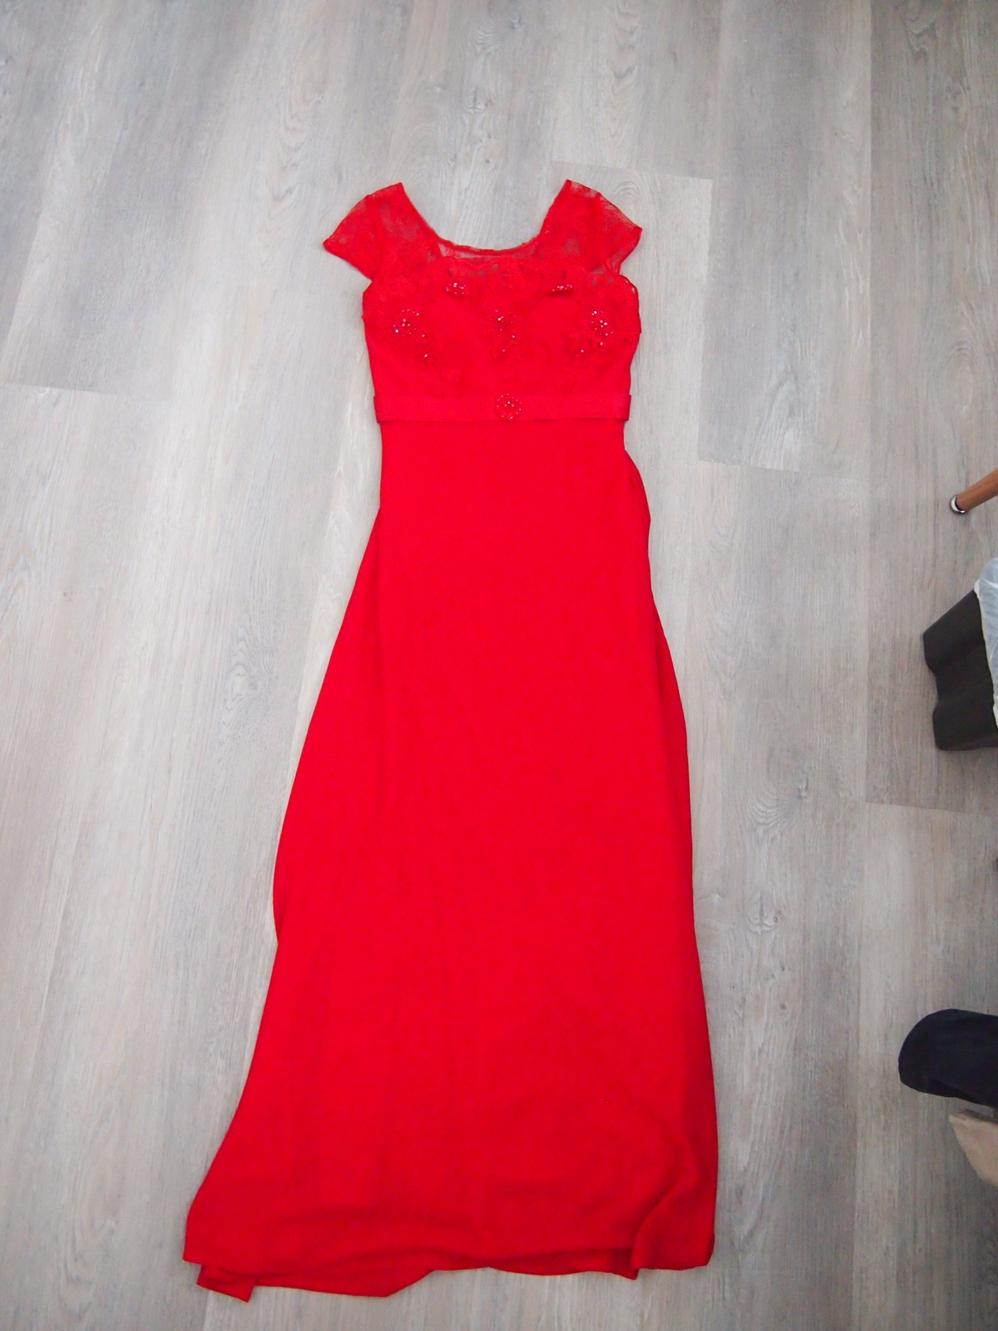 Dlouhé červené šaty - Obrázek č. 1